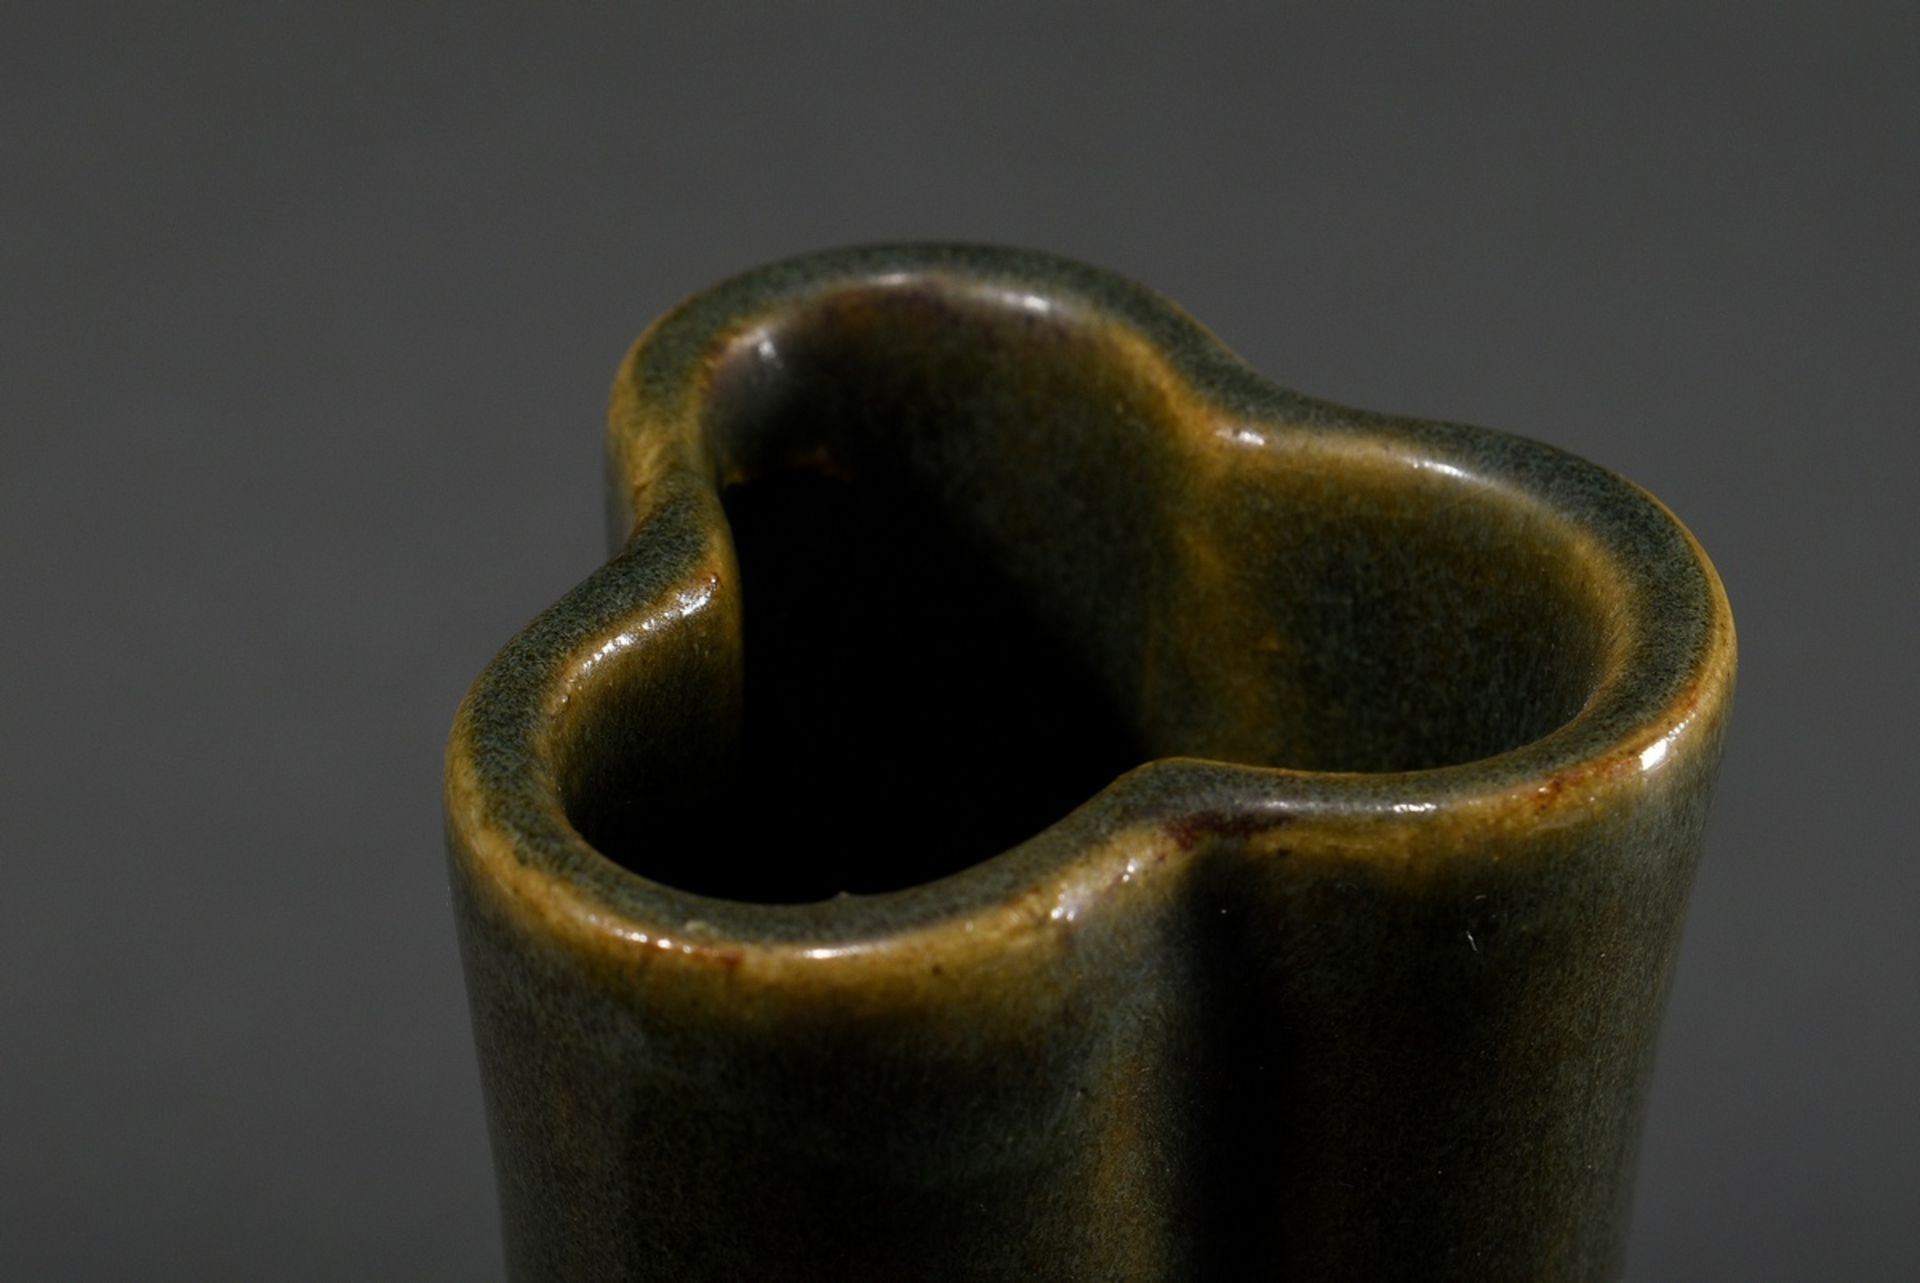 Dreipassige Keramik Vase mit dunkler Teadust Glasur, China, Qing Dynastie, H. 25,4cm - Bild 3 aus 4